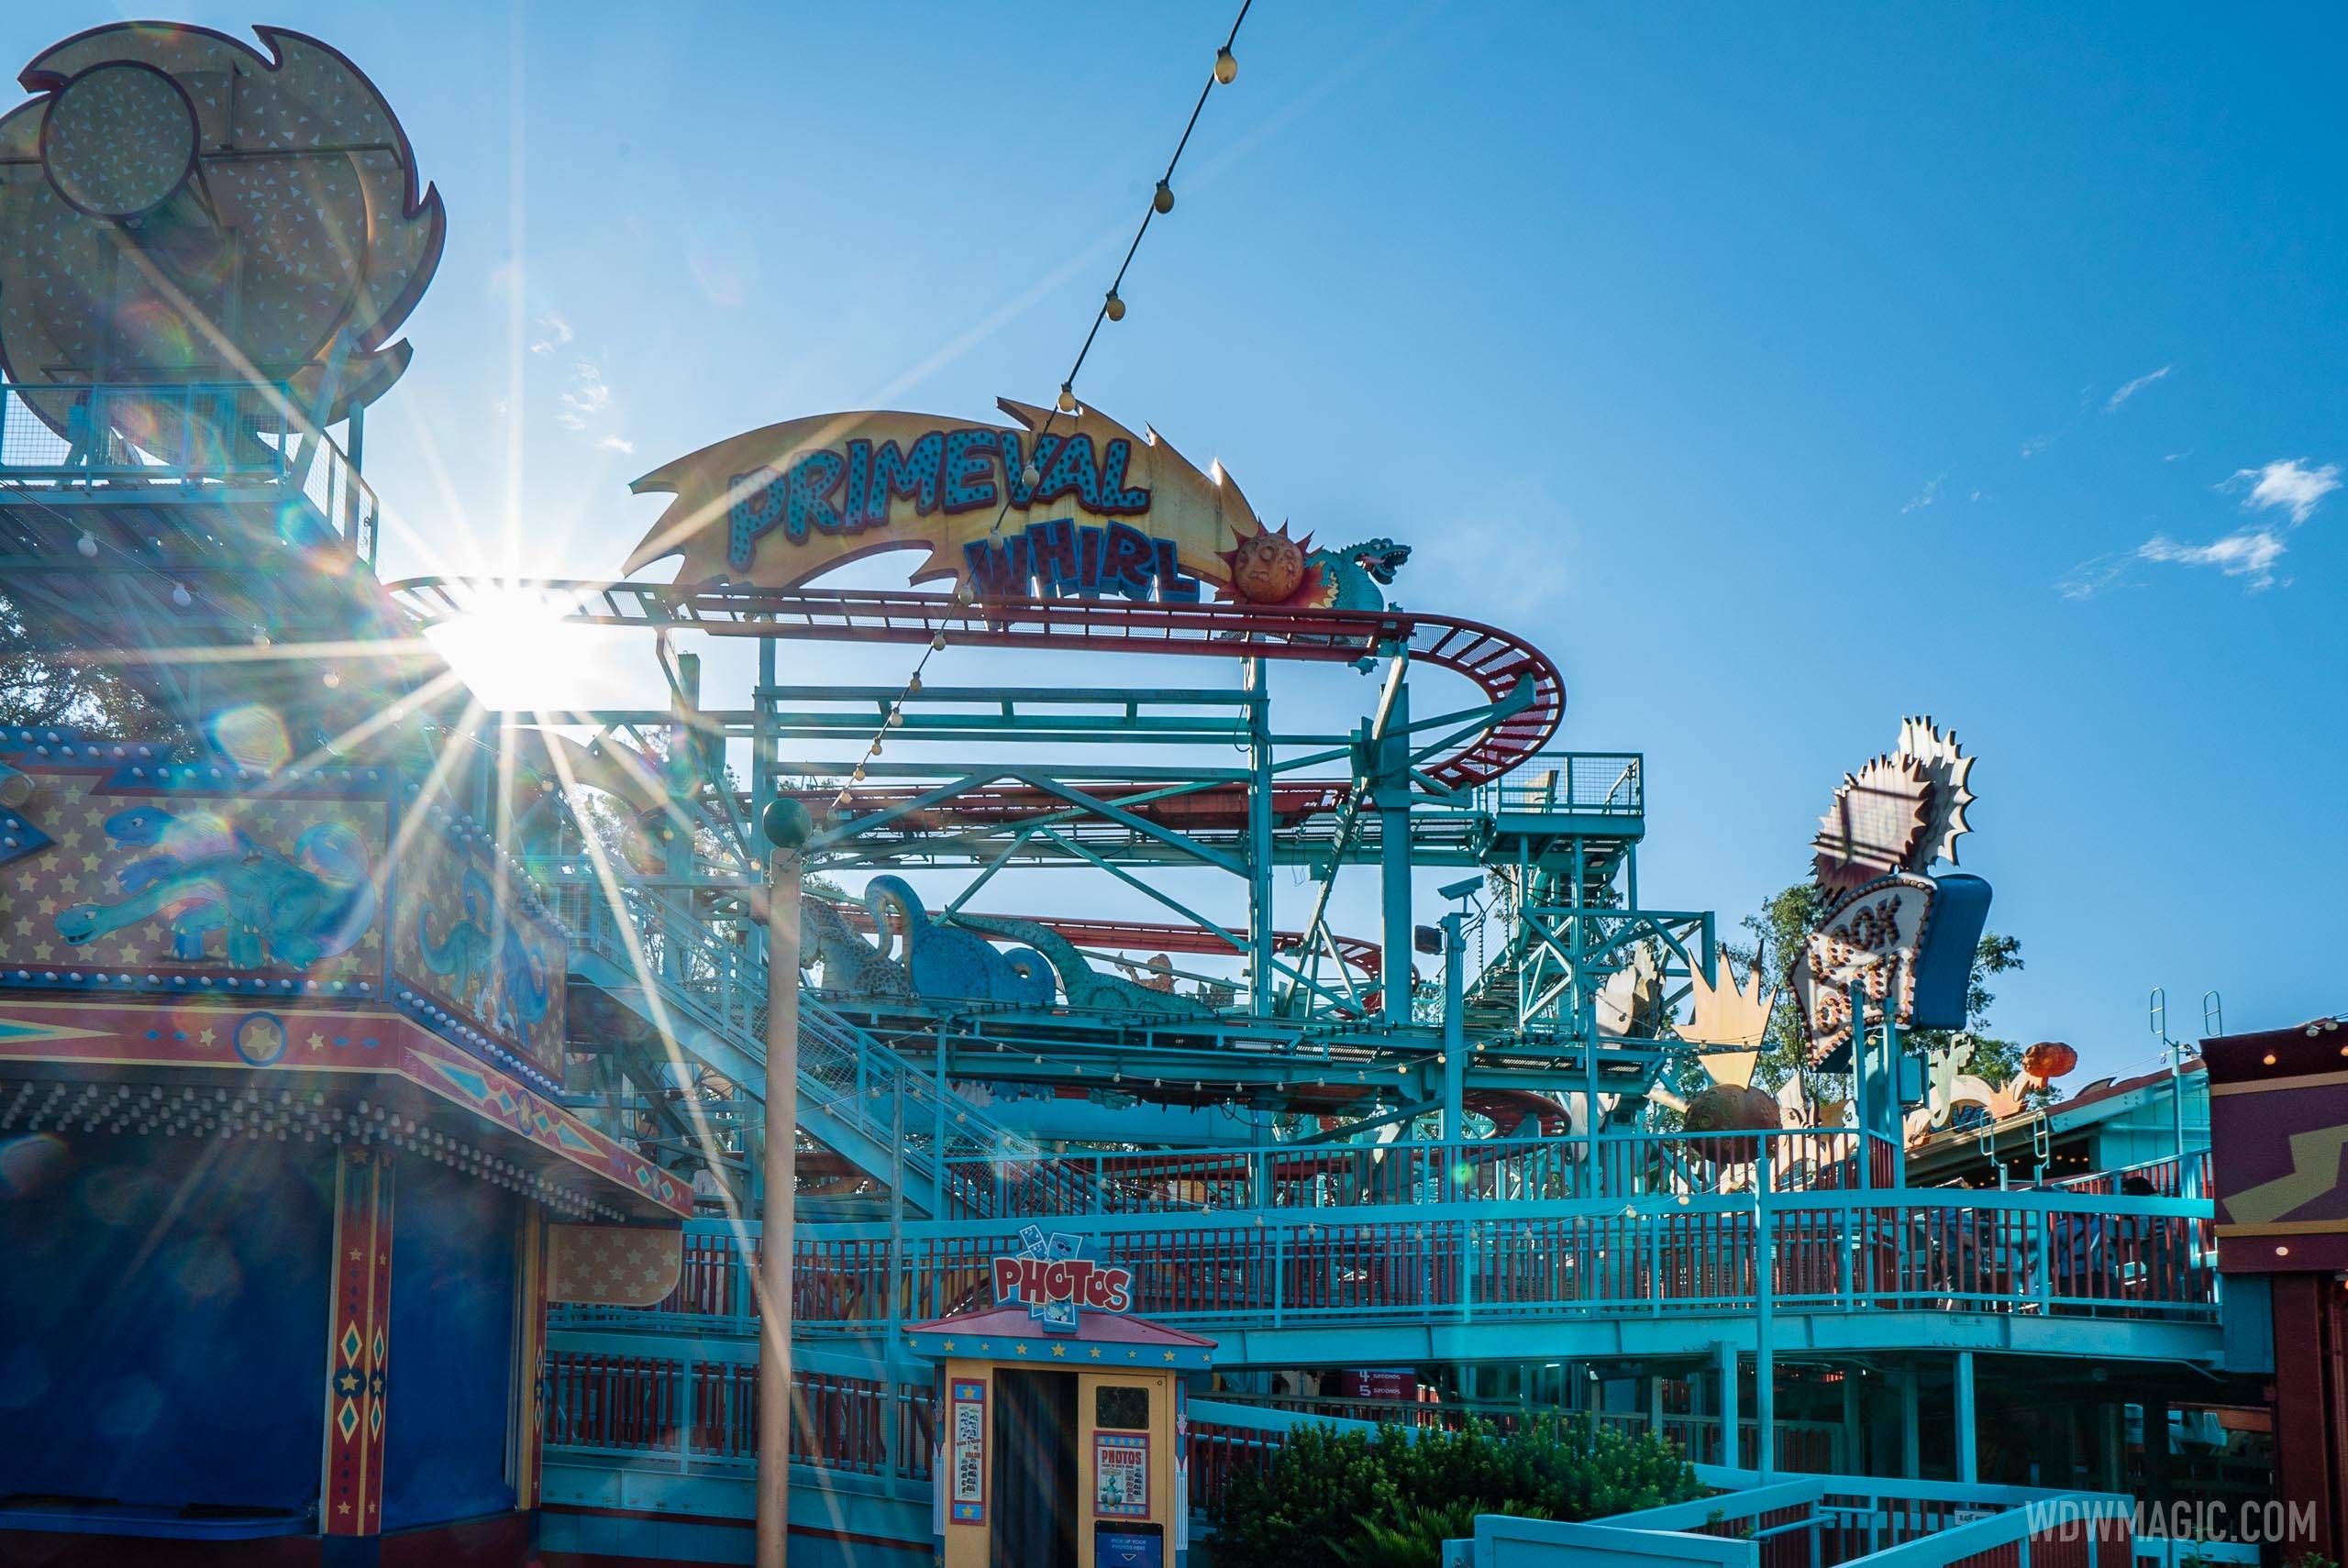 Just an Amusement Park ride.